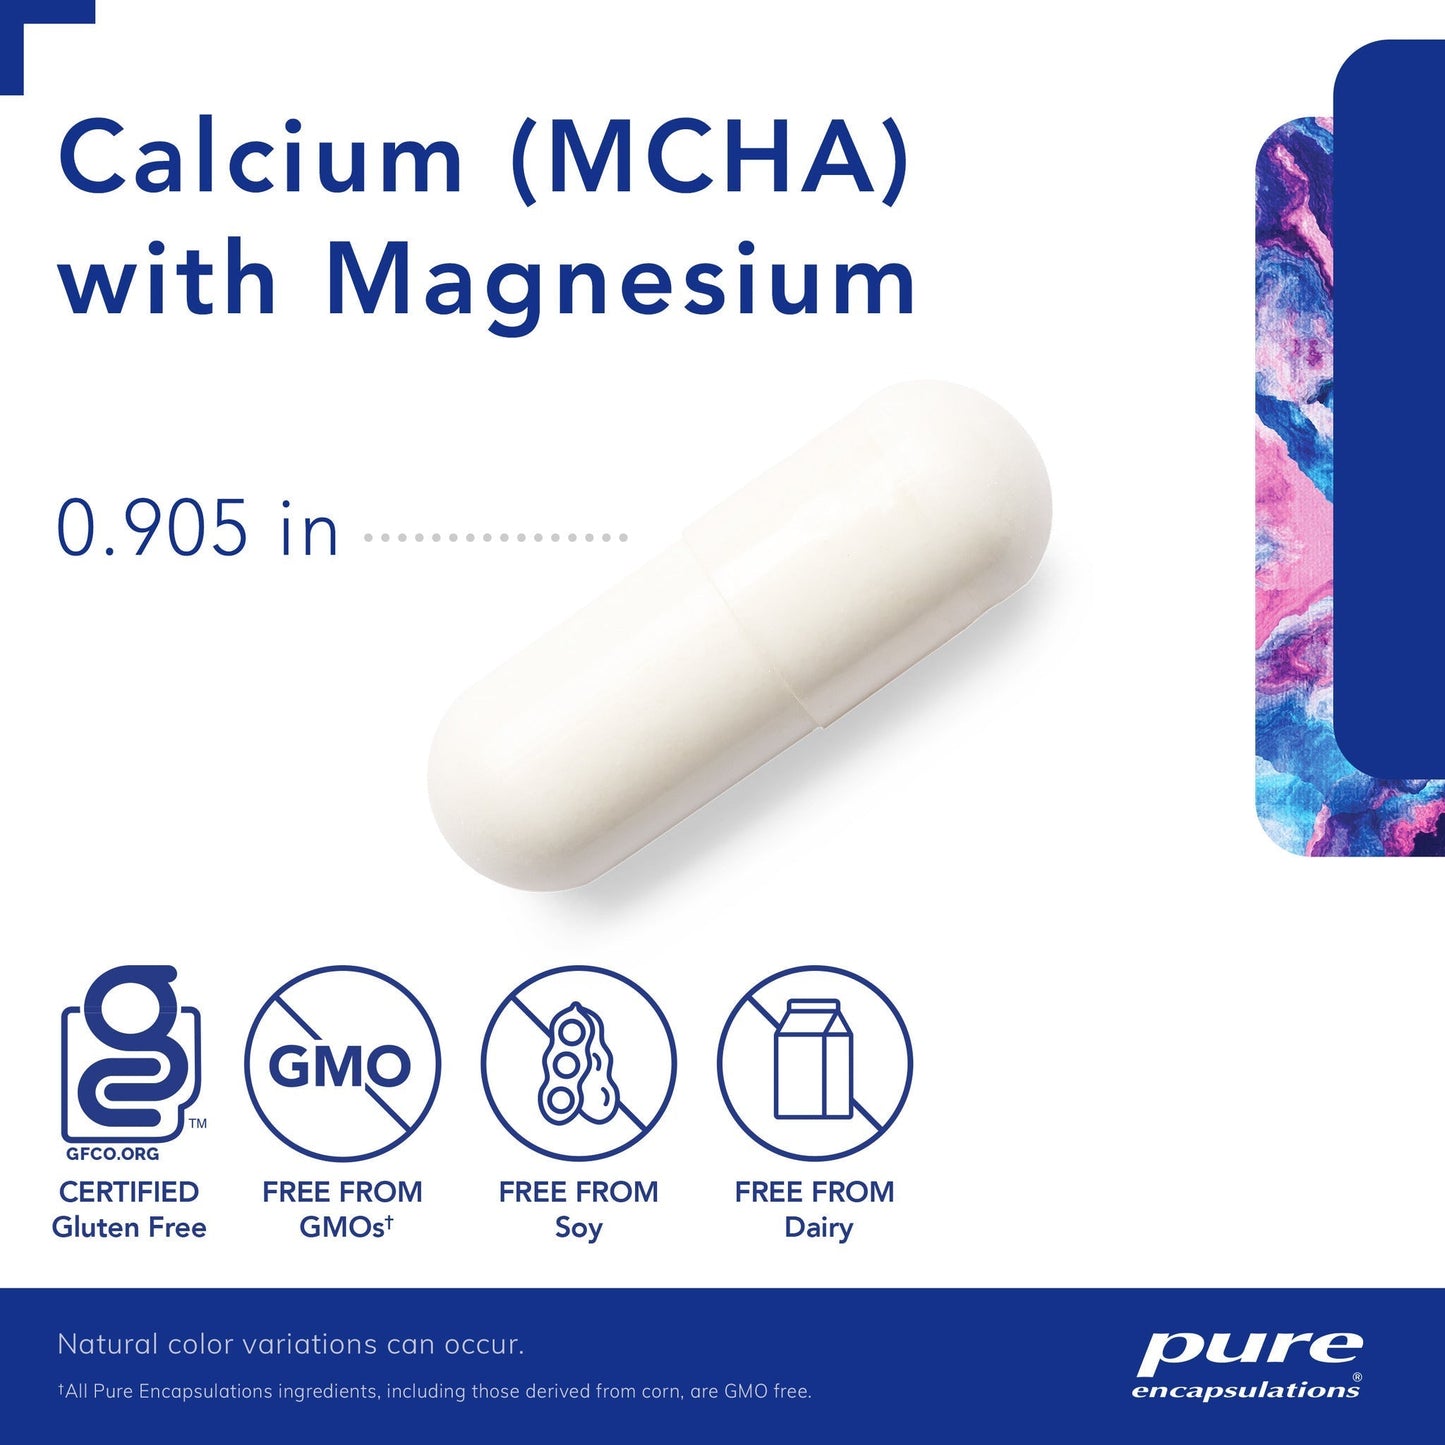 Calcium (MCHA) with Magnesium